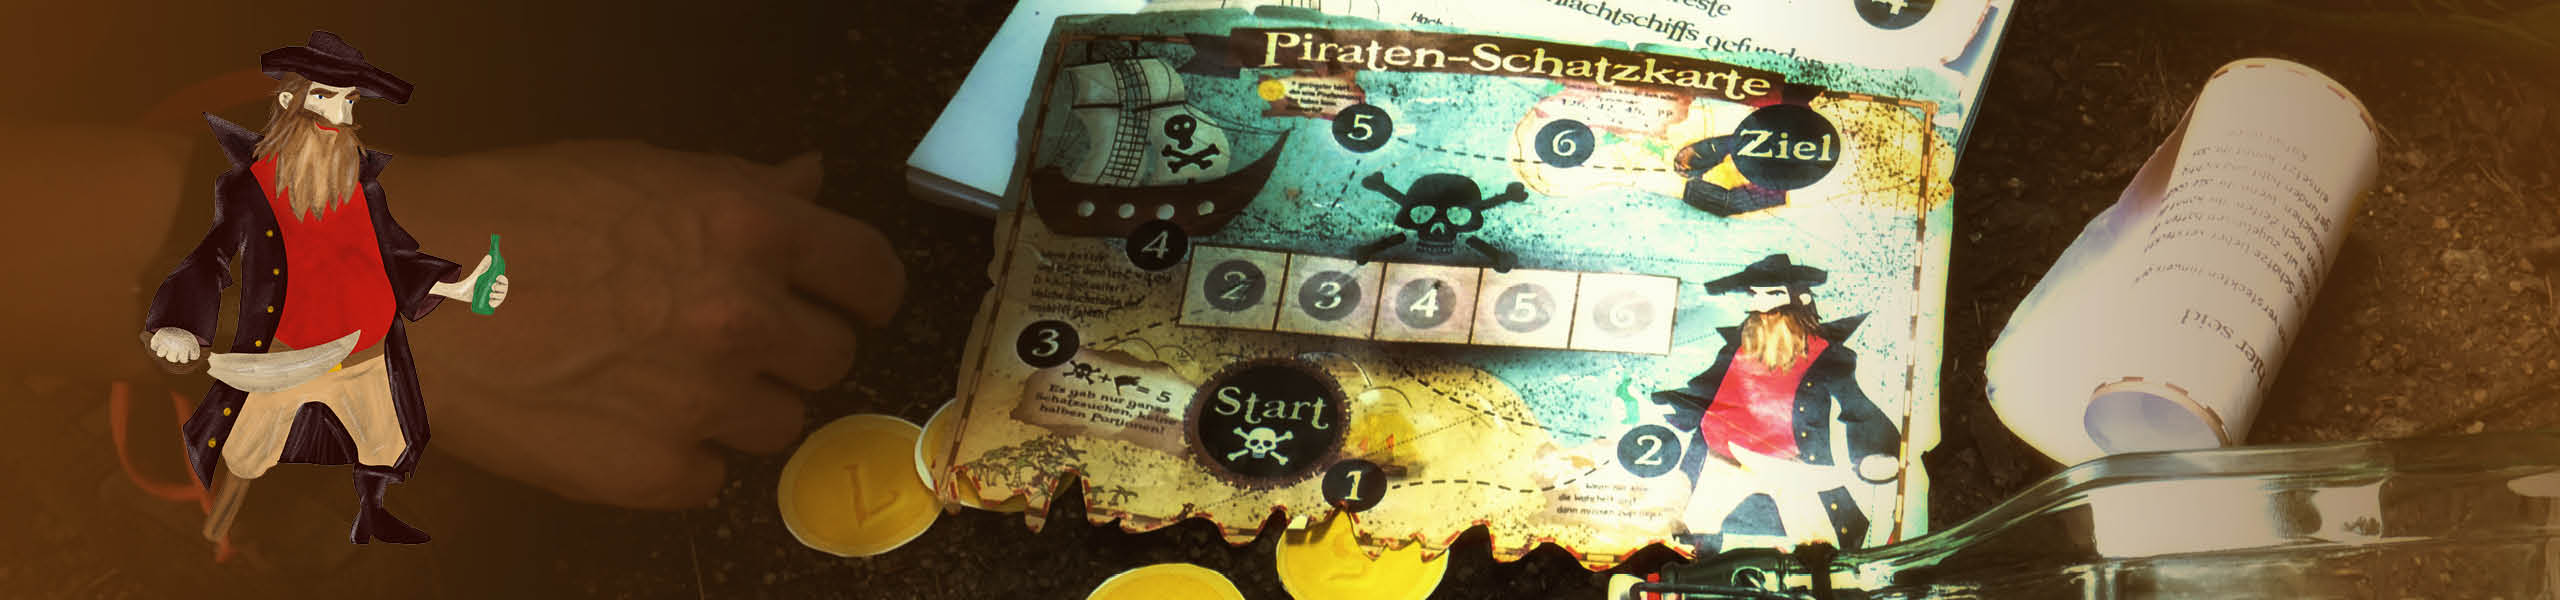 Piraten-Schatzsuche für große Kinder und Erwachsene